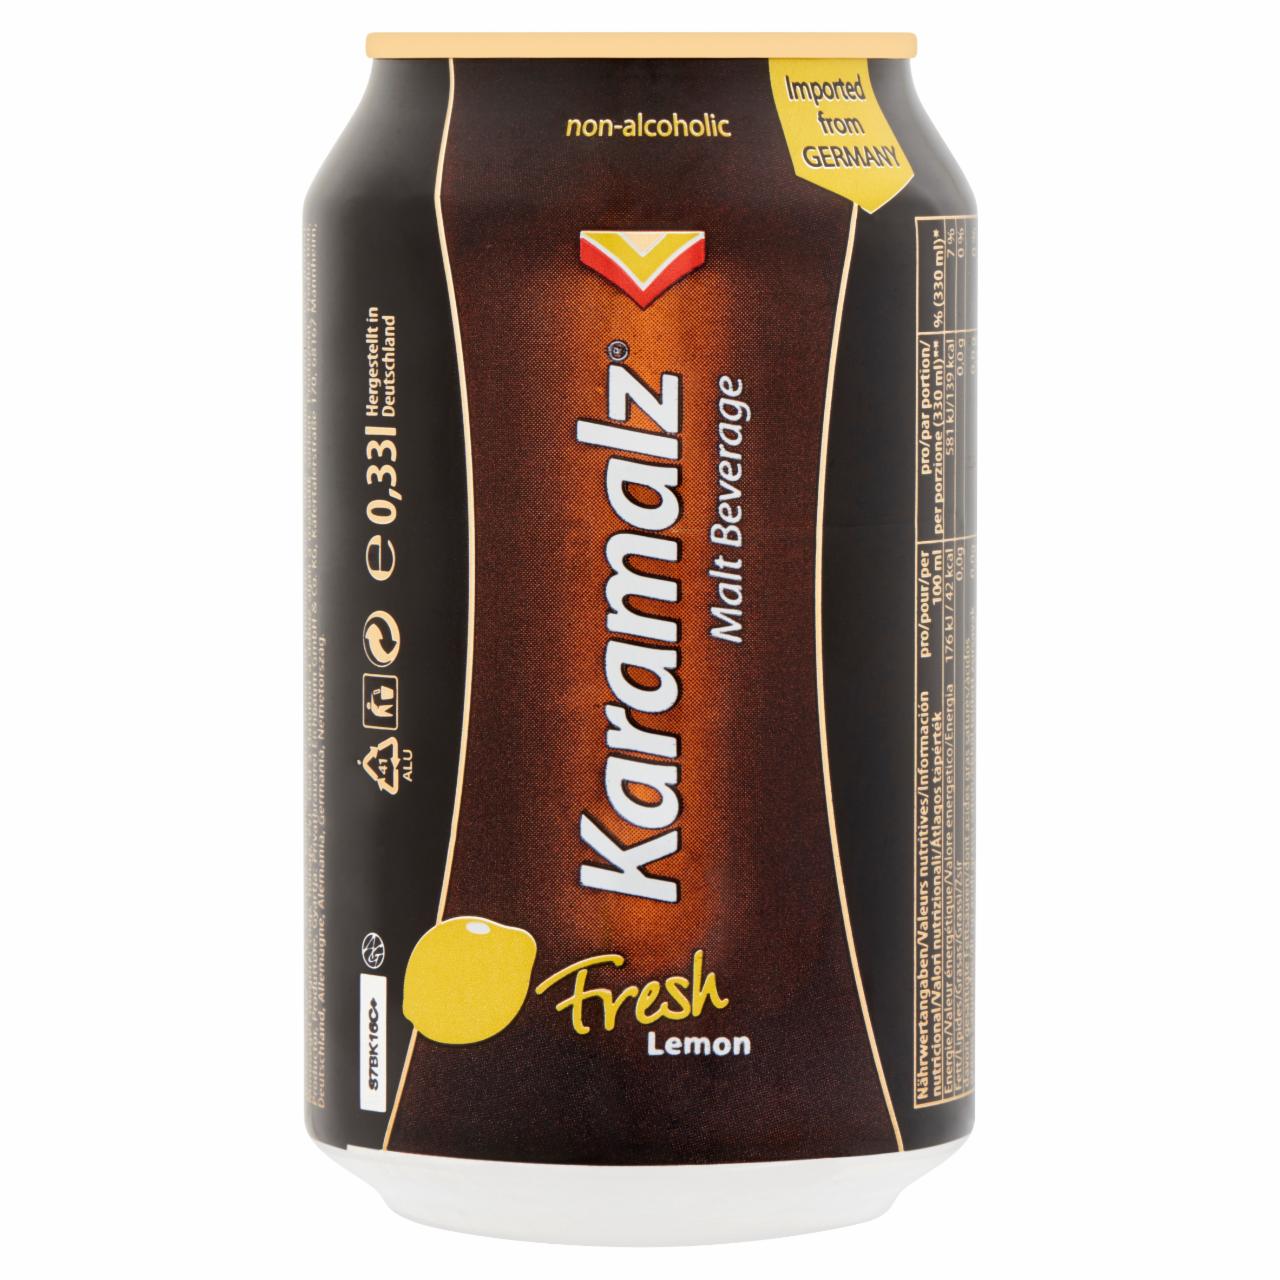 Képek - Karamalz alkoholmentes italkeverék malátaitalból és citrom ízű limonádéból 0,33 l